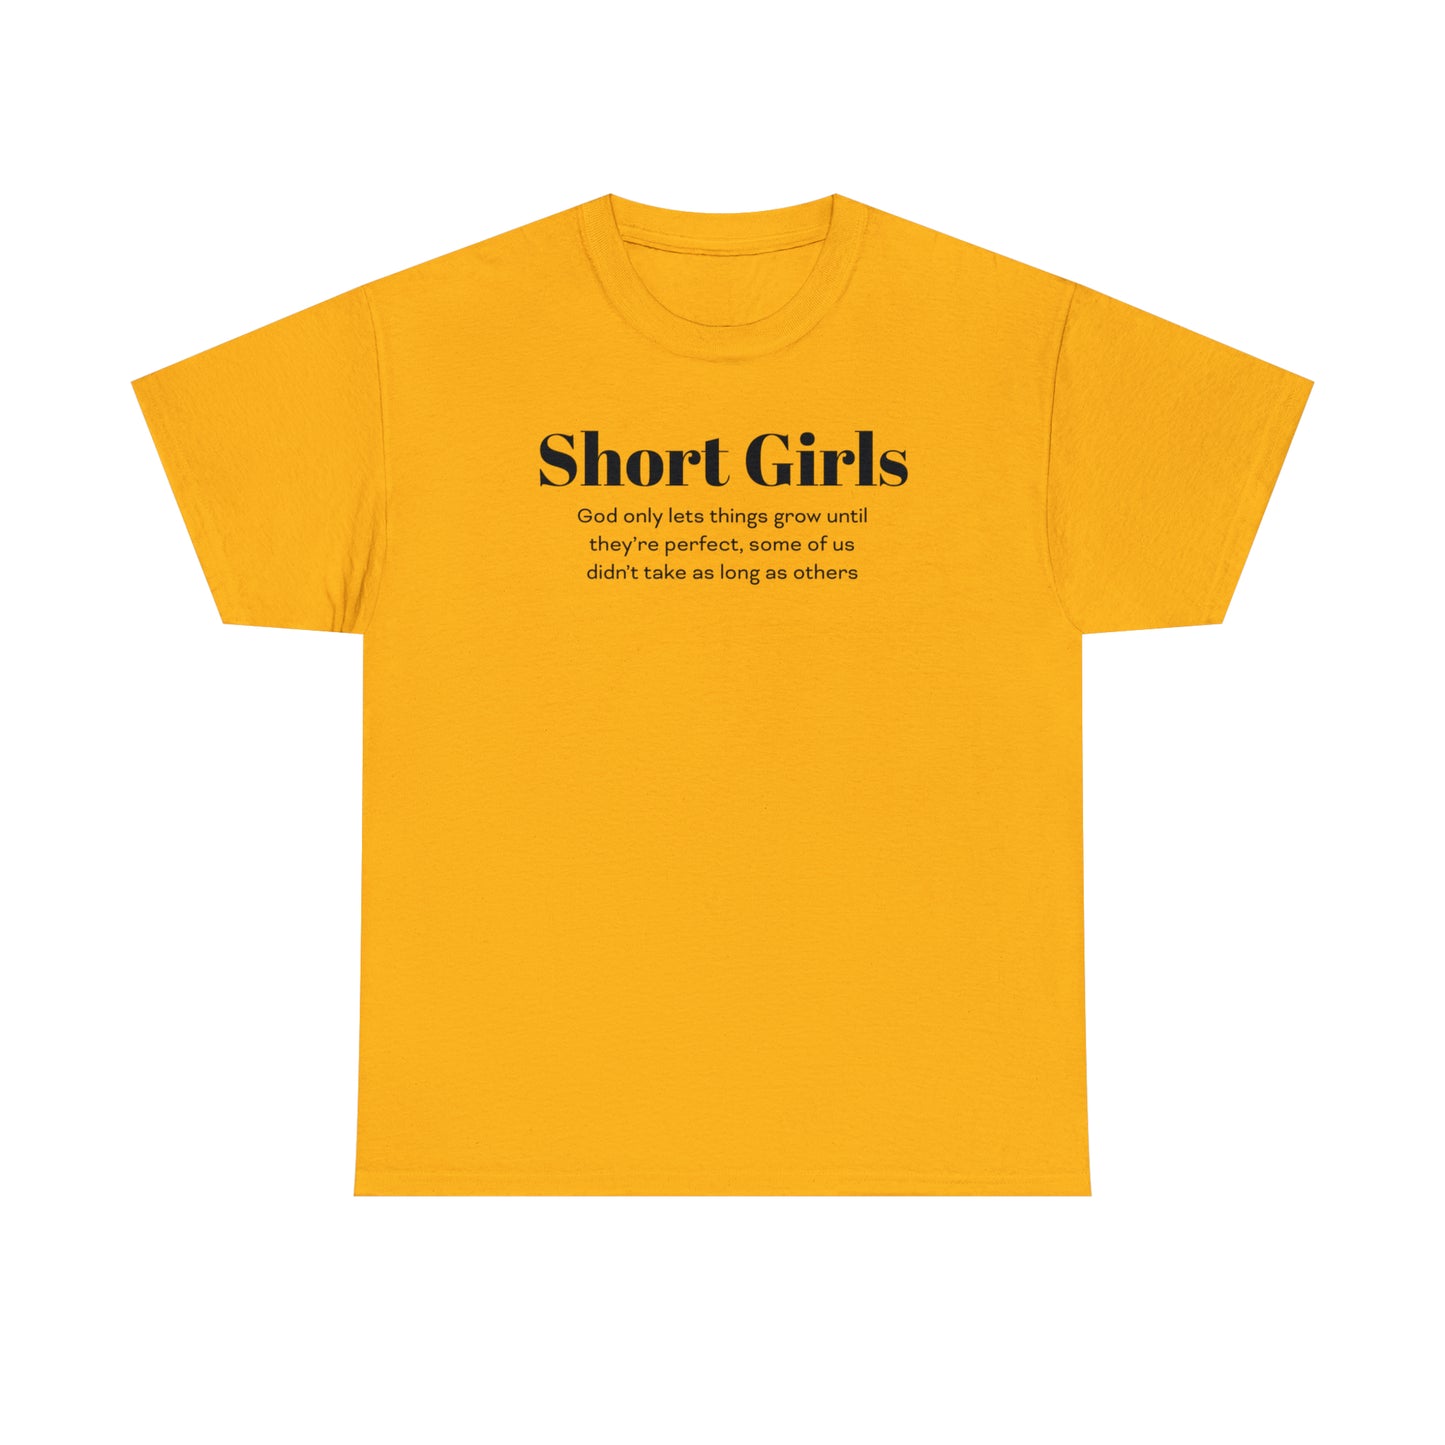 Funny T-Shirt For Short Girls T-Shirt For Sentimental Girl Shirt For Motivational Girl Shirt For Gift For Short Girl